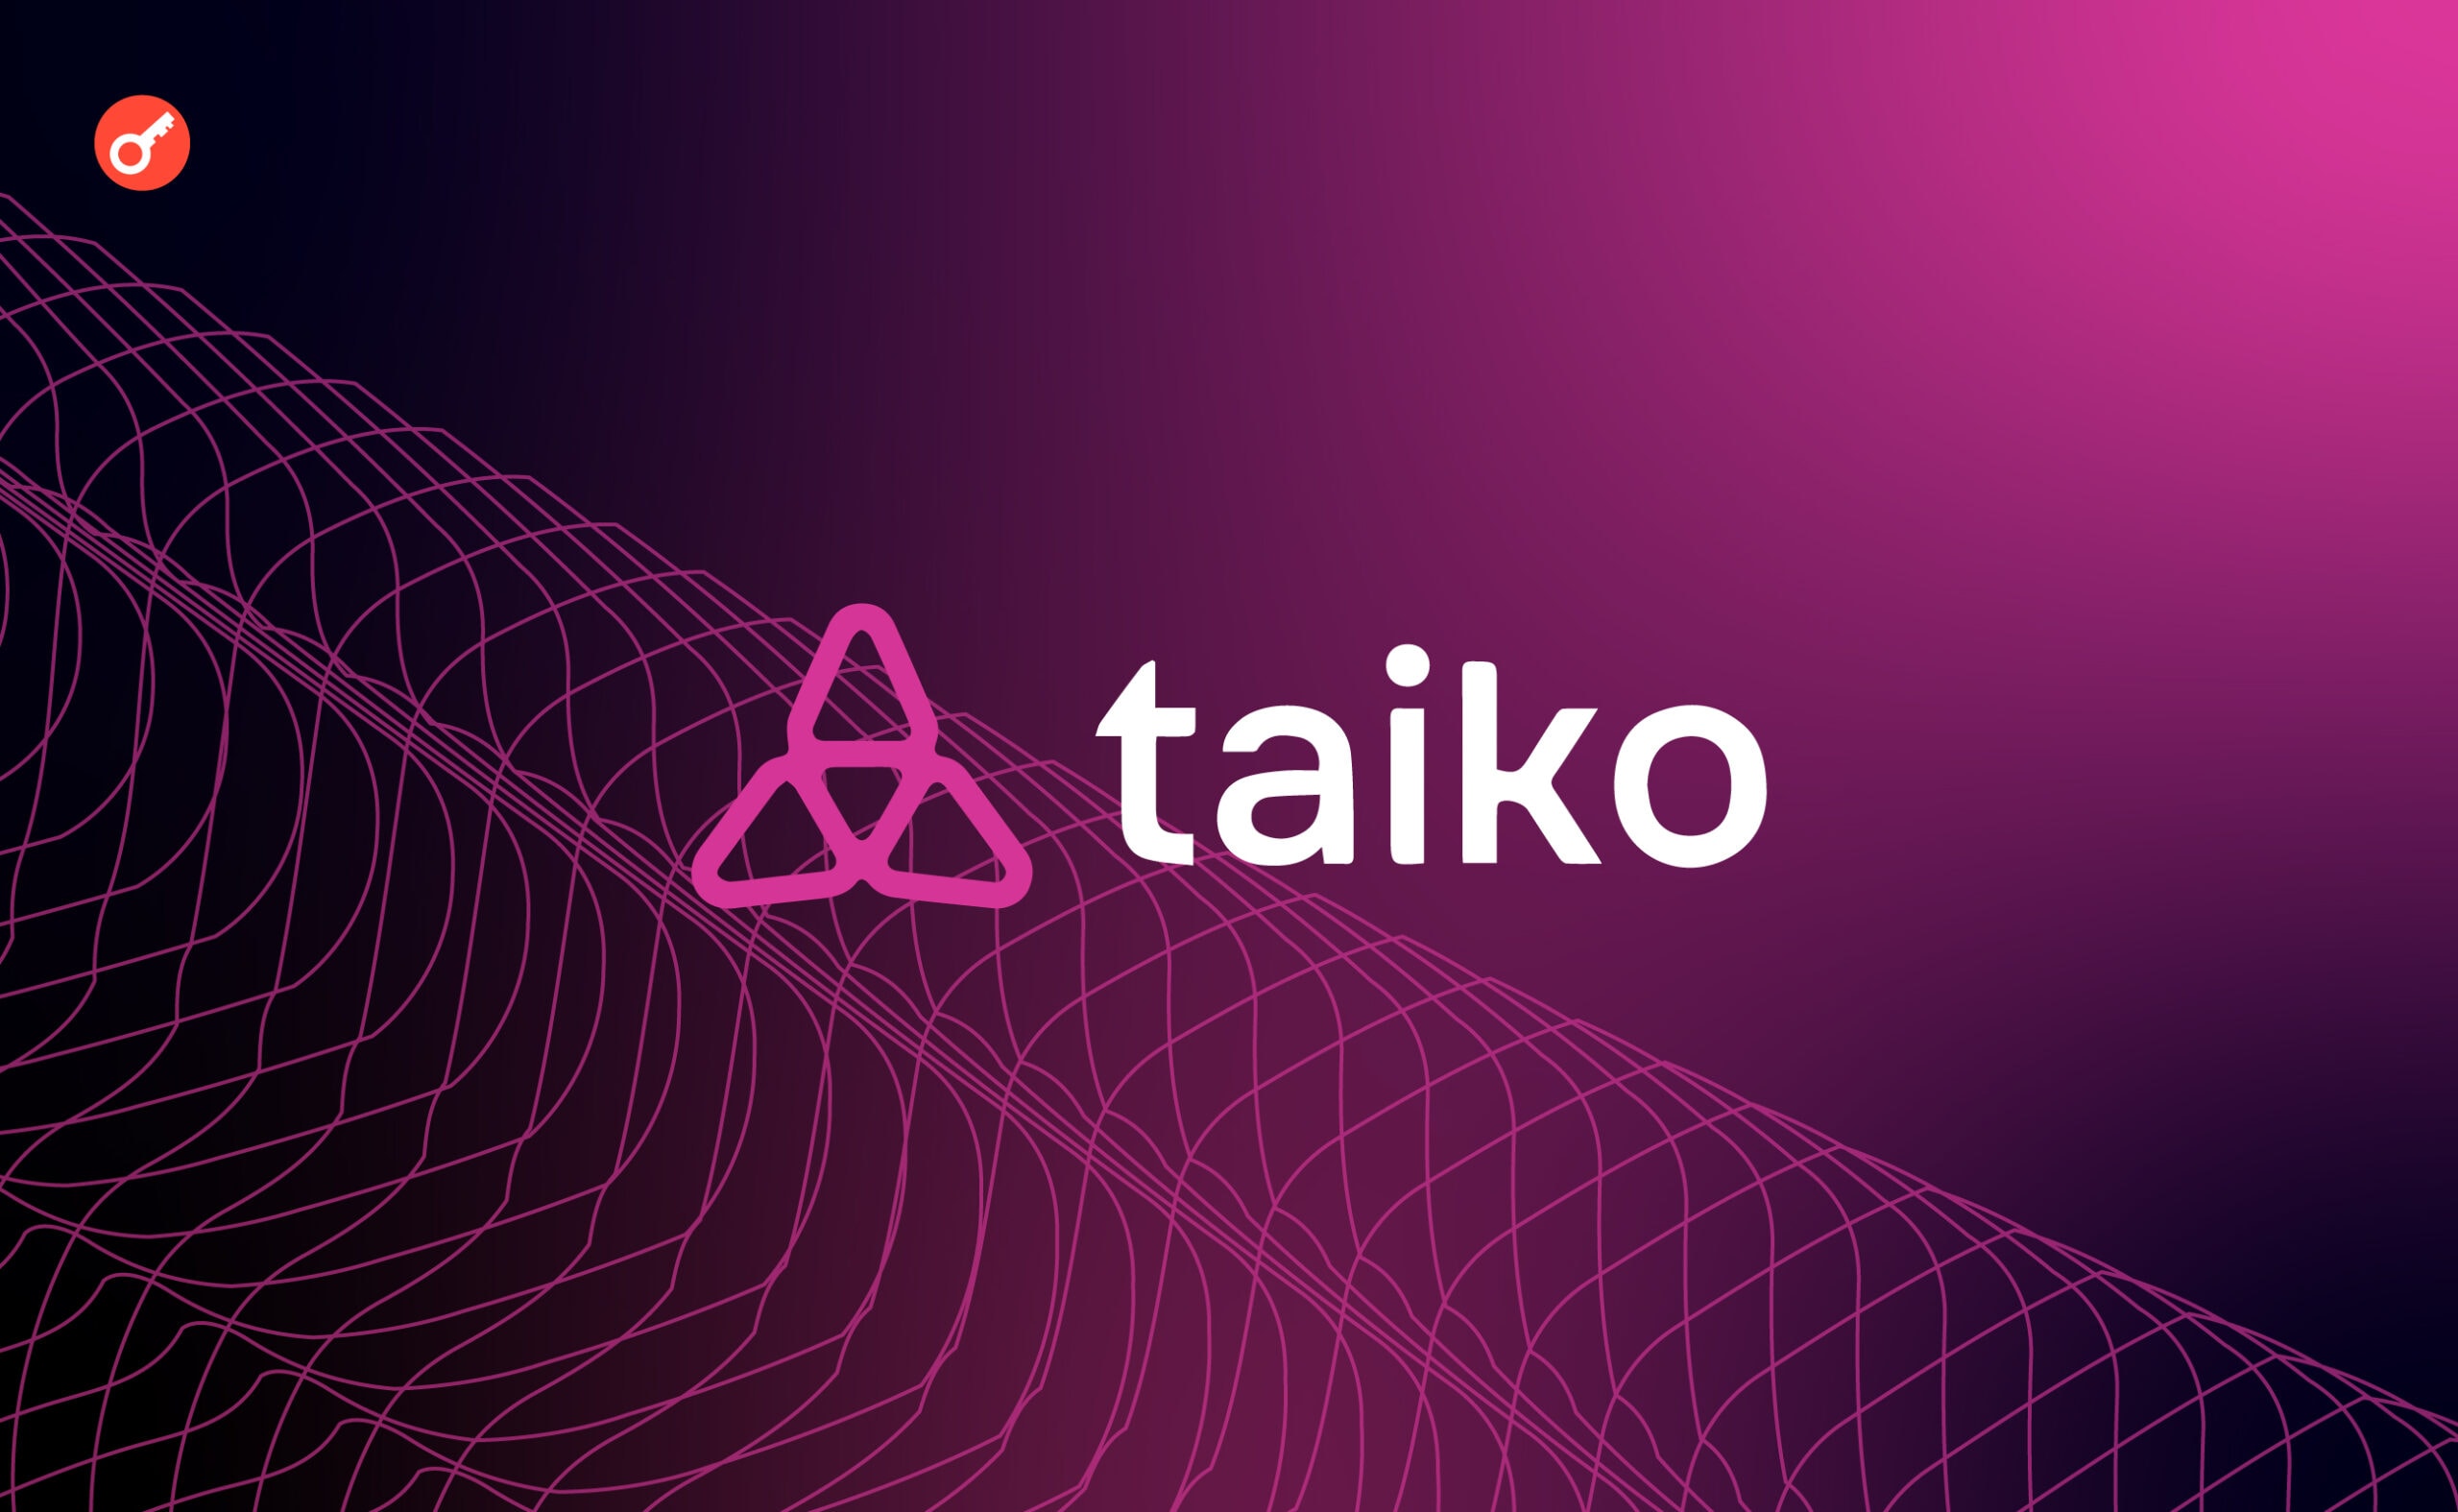 L2-протокол Taiko объявил о запуске в мейннете Ethereum. Заглавный коллаж новости.